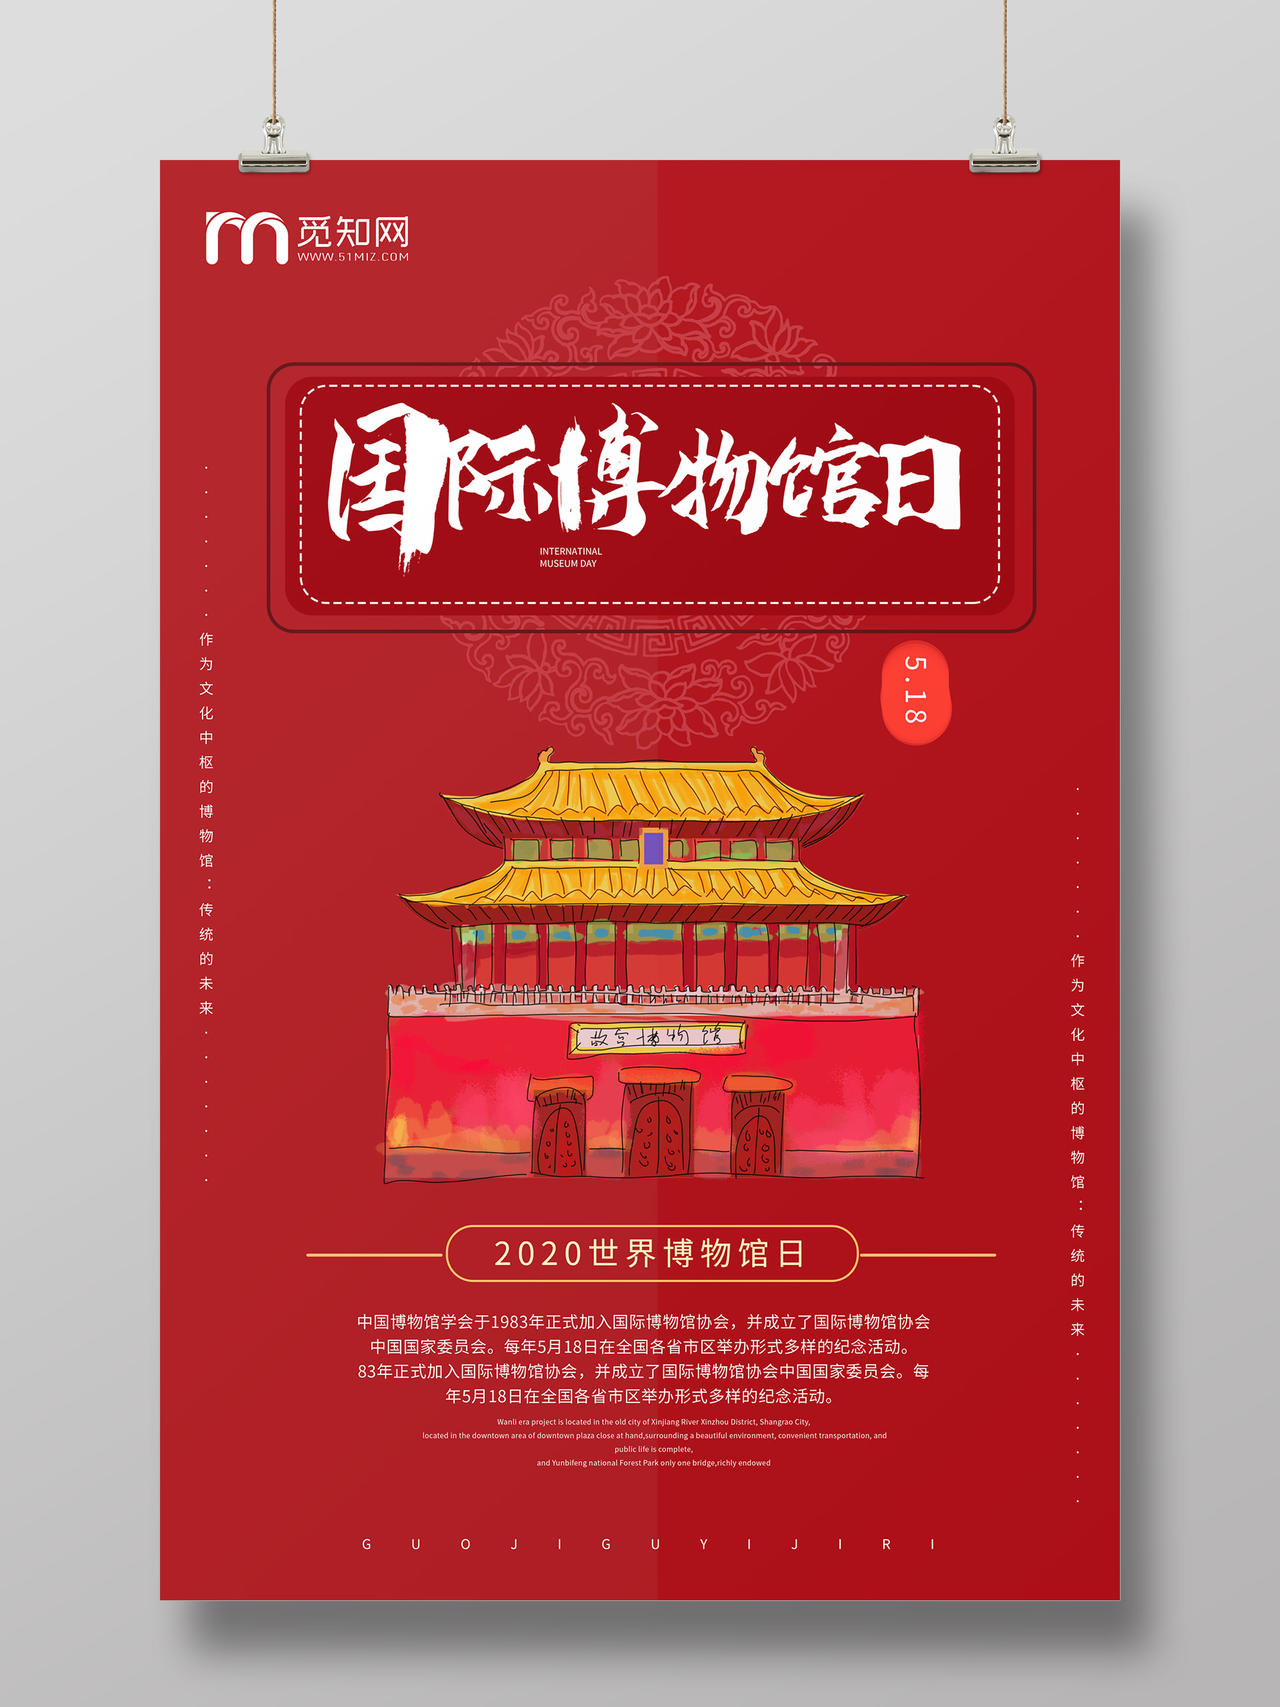 红色简洁大气扁平化国际博物馆日海报